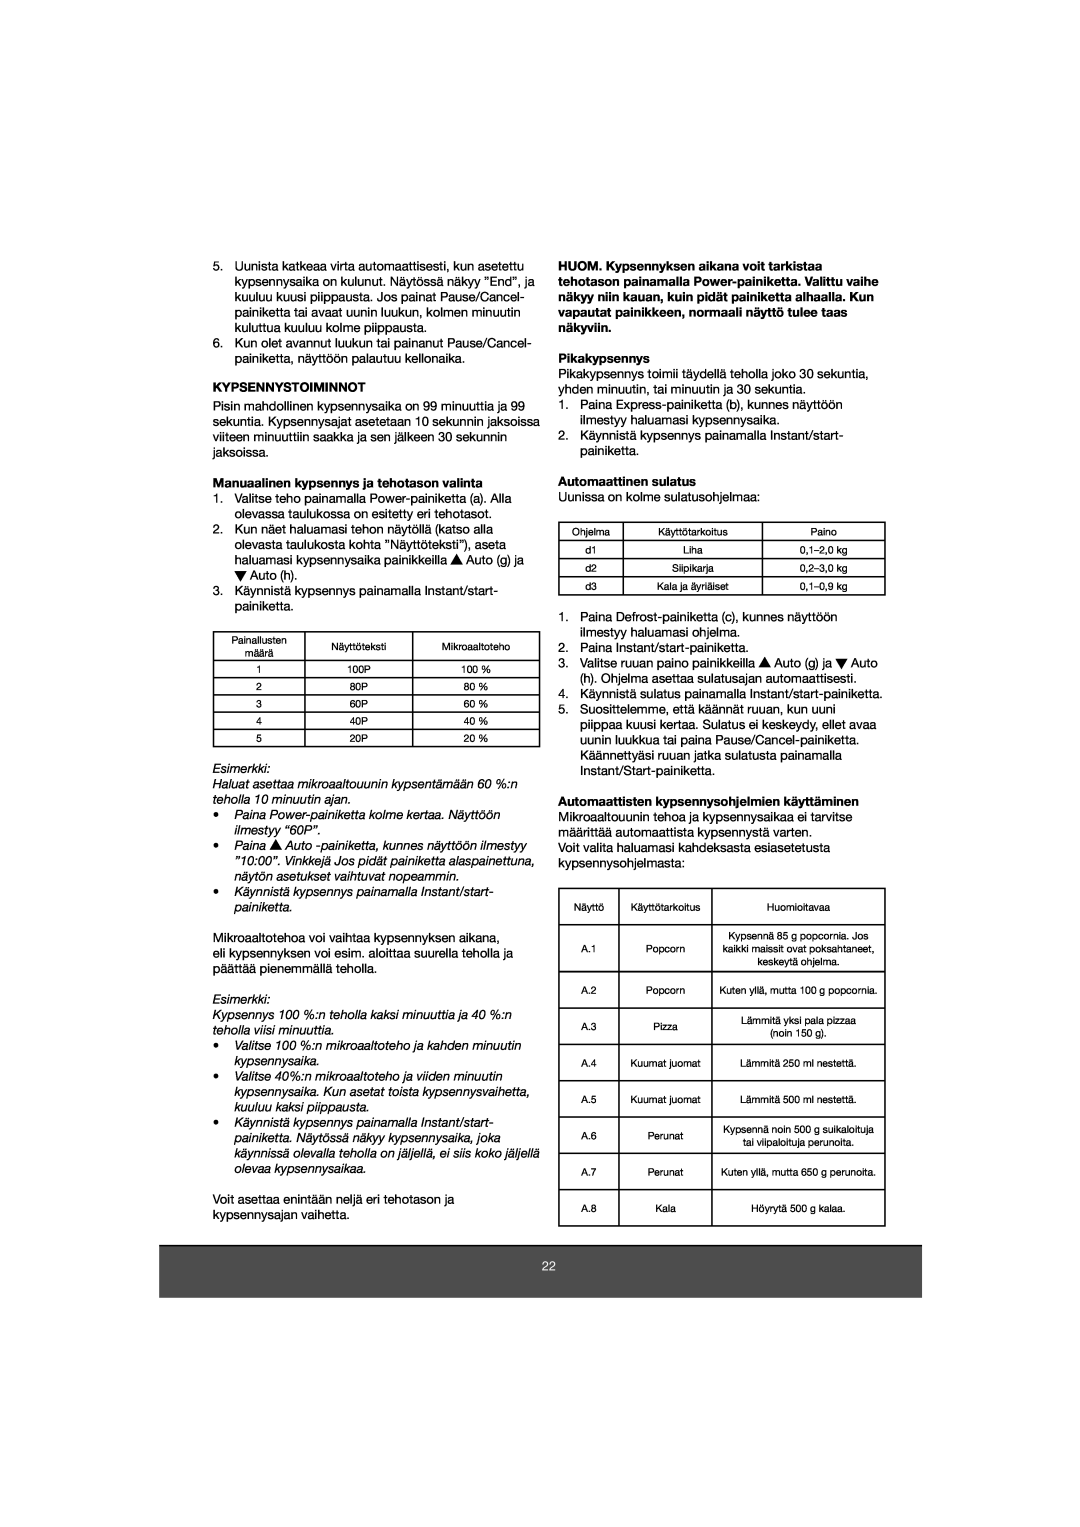 Melissa 653-081 manual Kypsennystoiminnot, Manuaalinen kypsennys ja tehotason valinta, Pikakypsennys, Automaattinen sulatus 